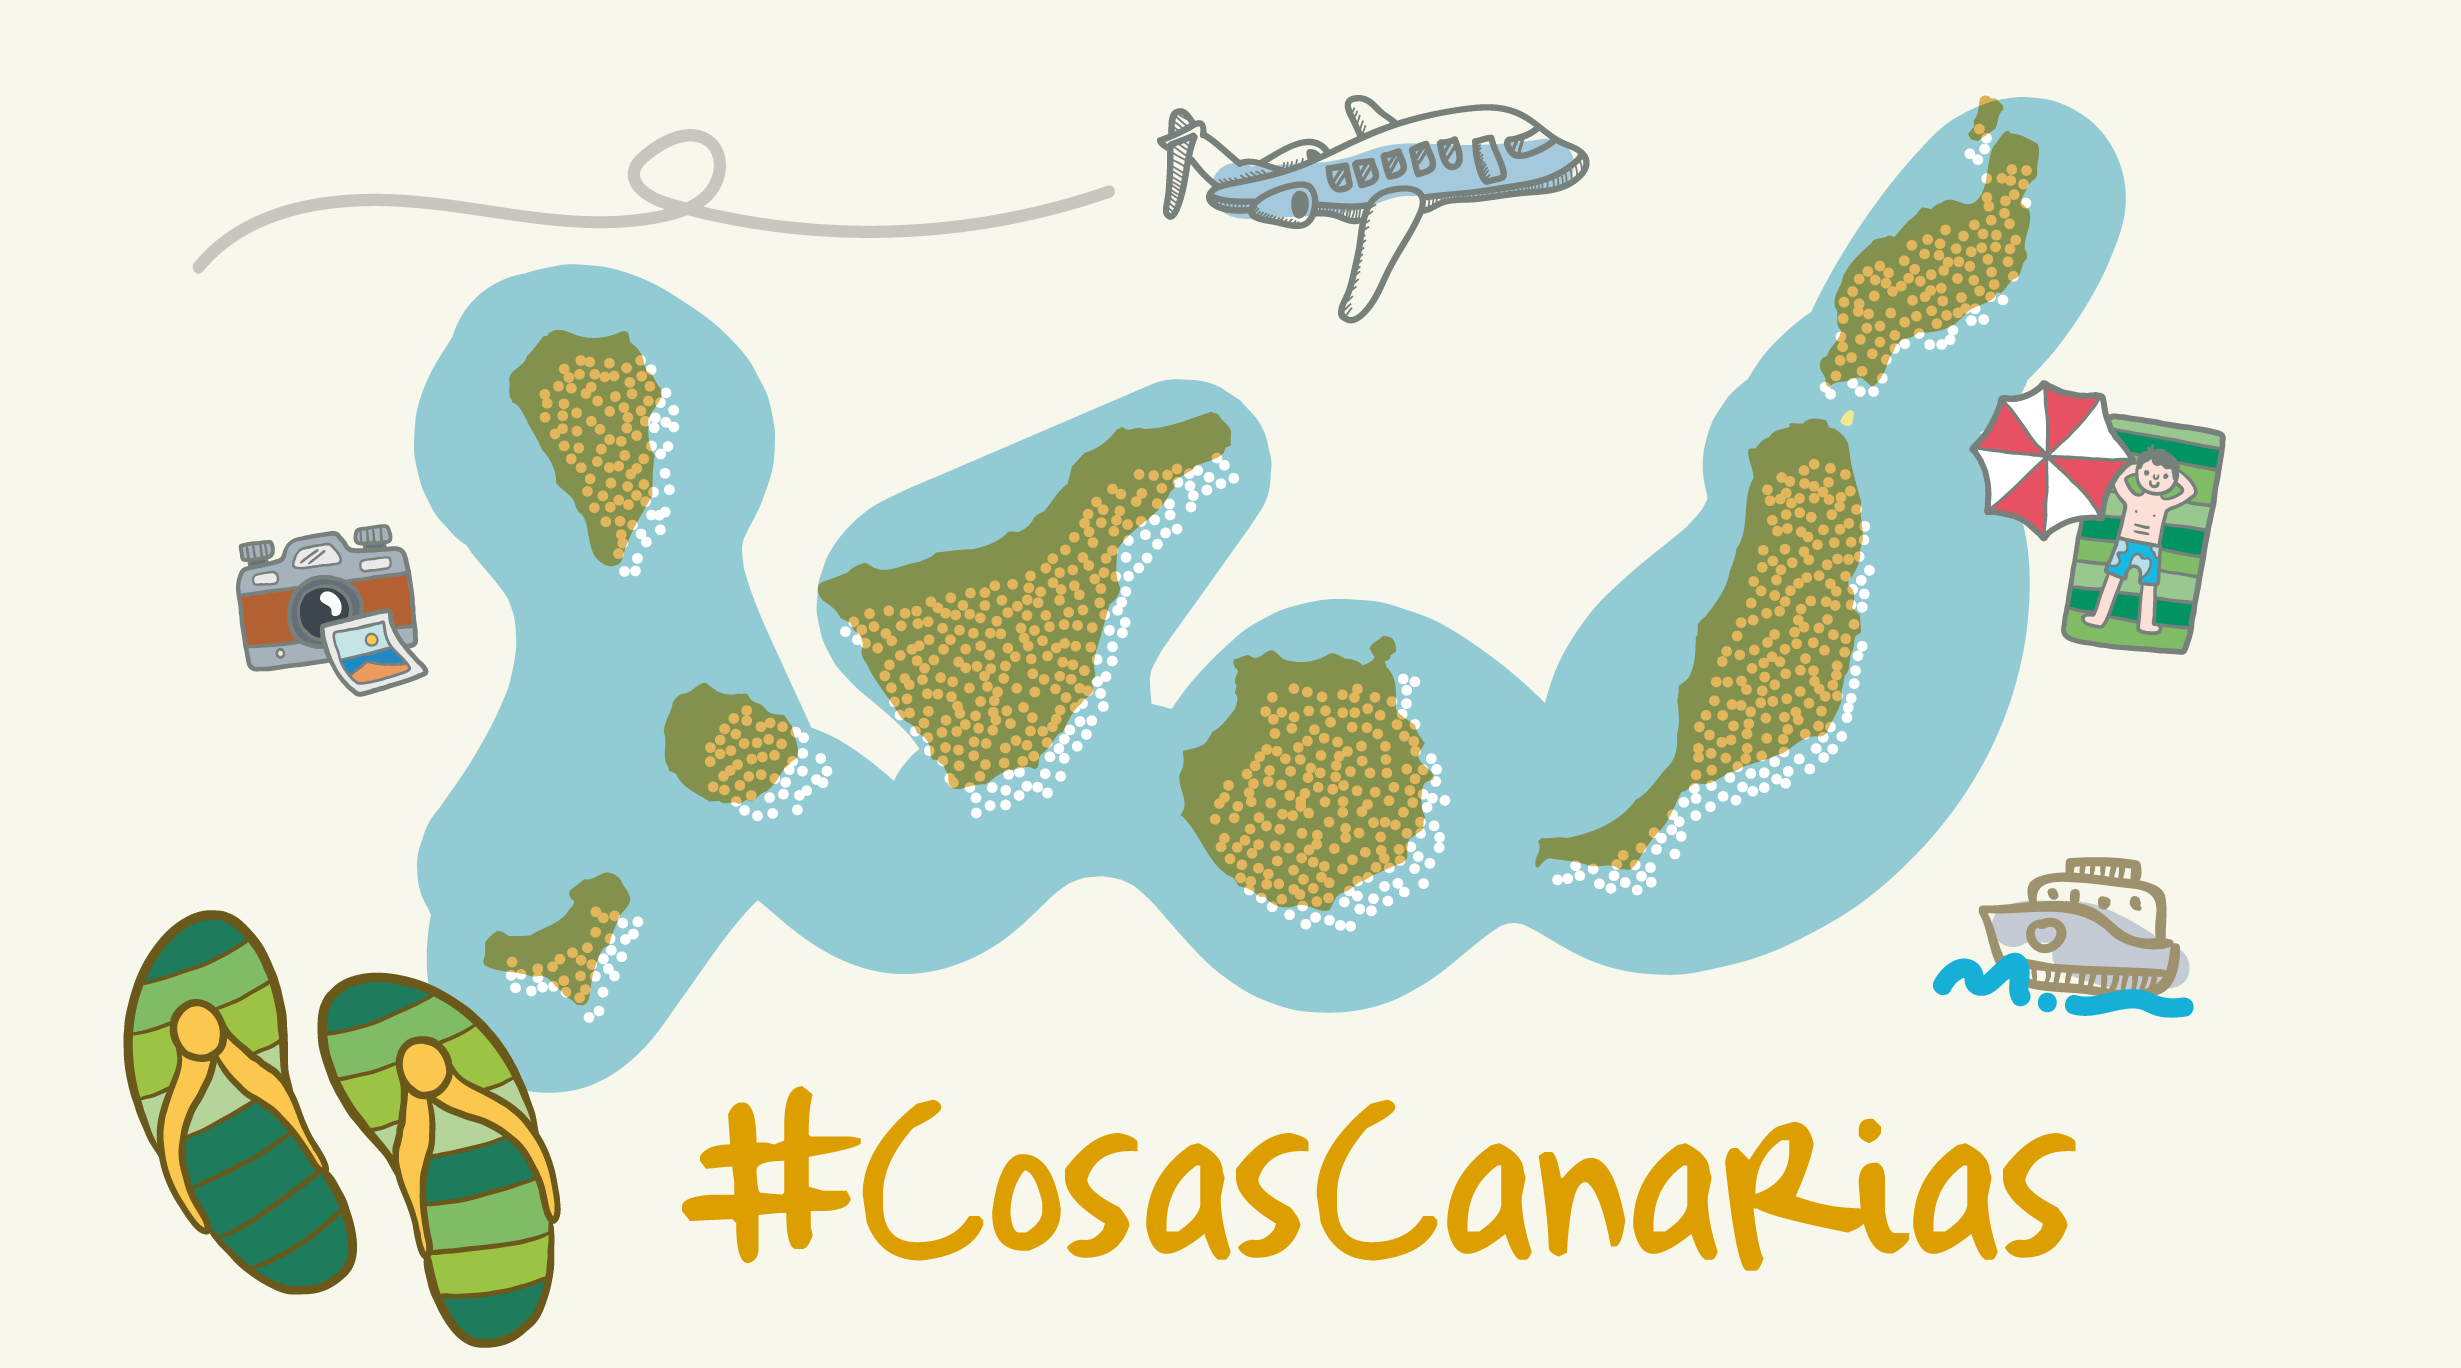 #CosasCanarias que nos unen. ¡Feliz Día de Canarias!